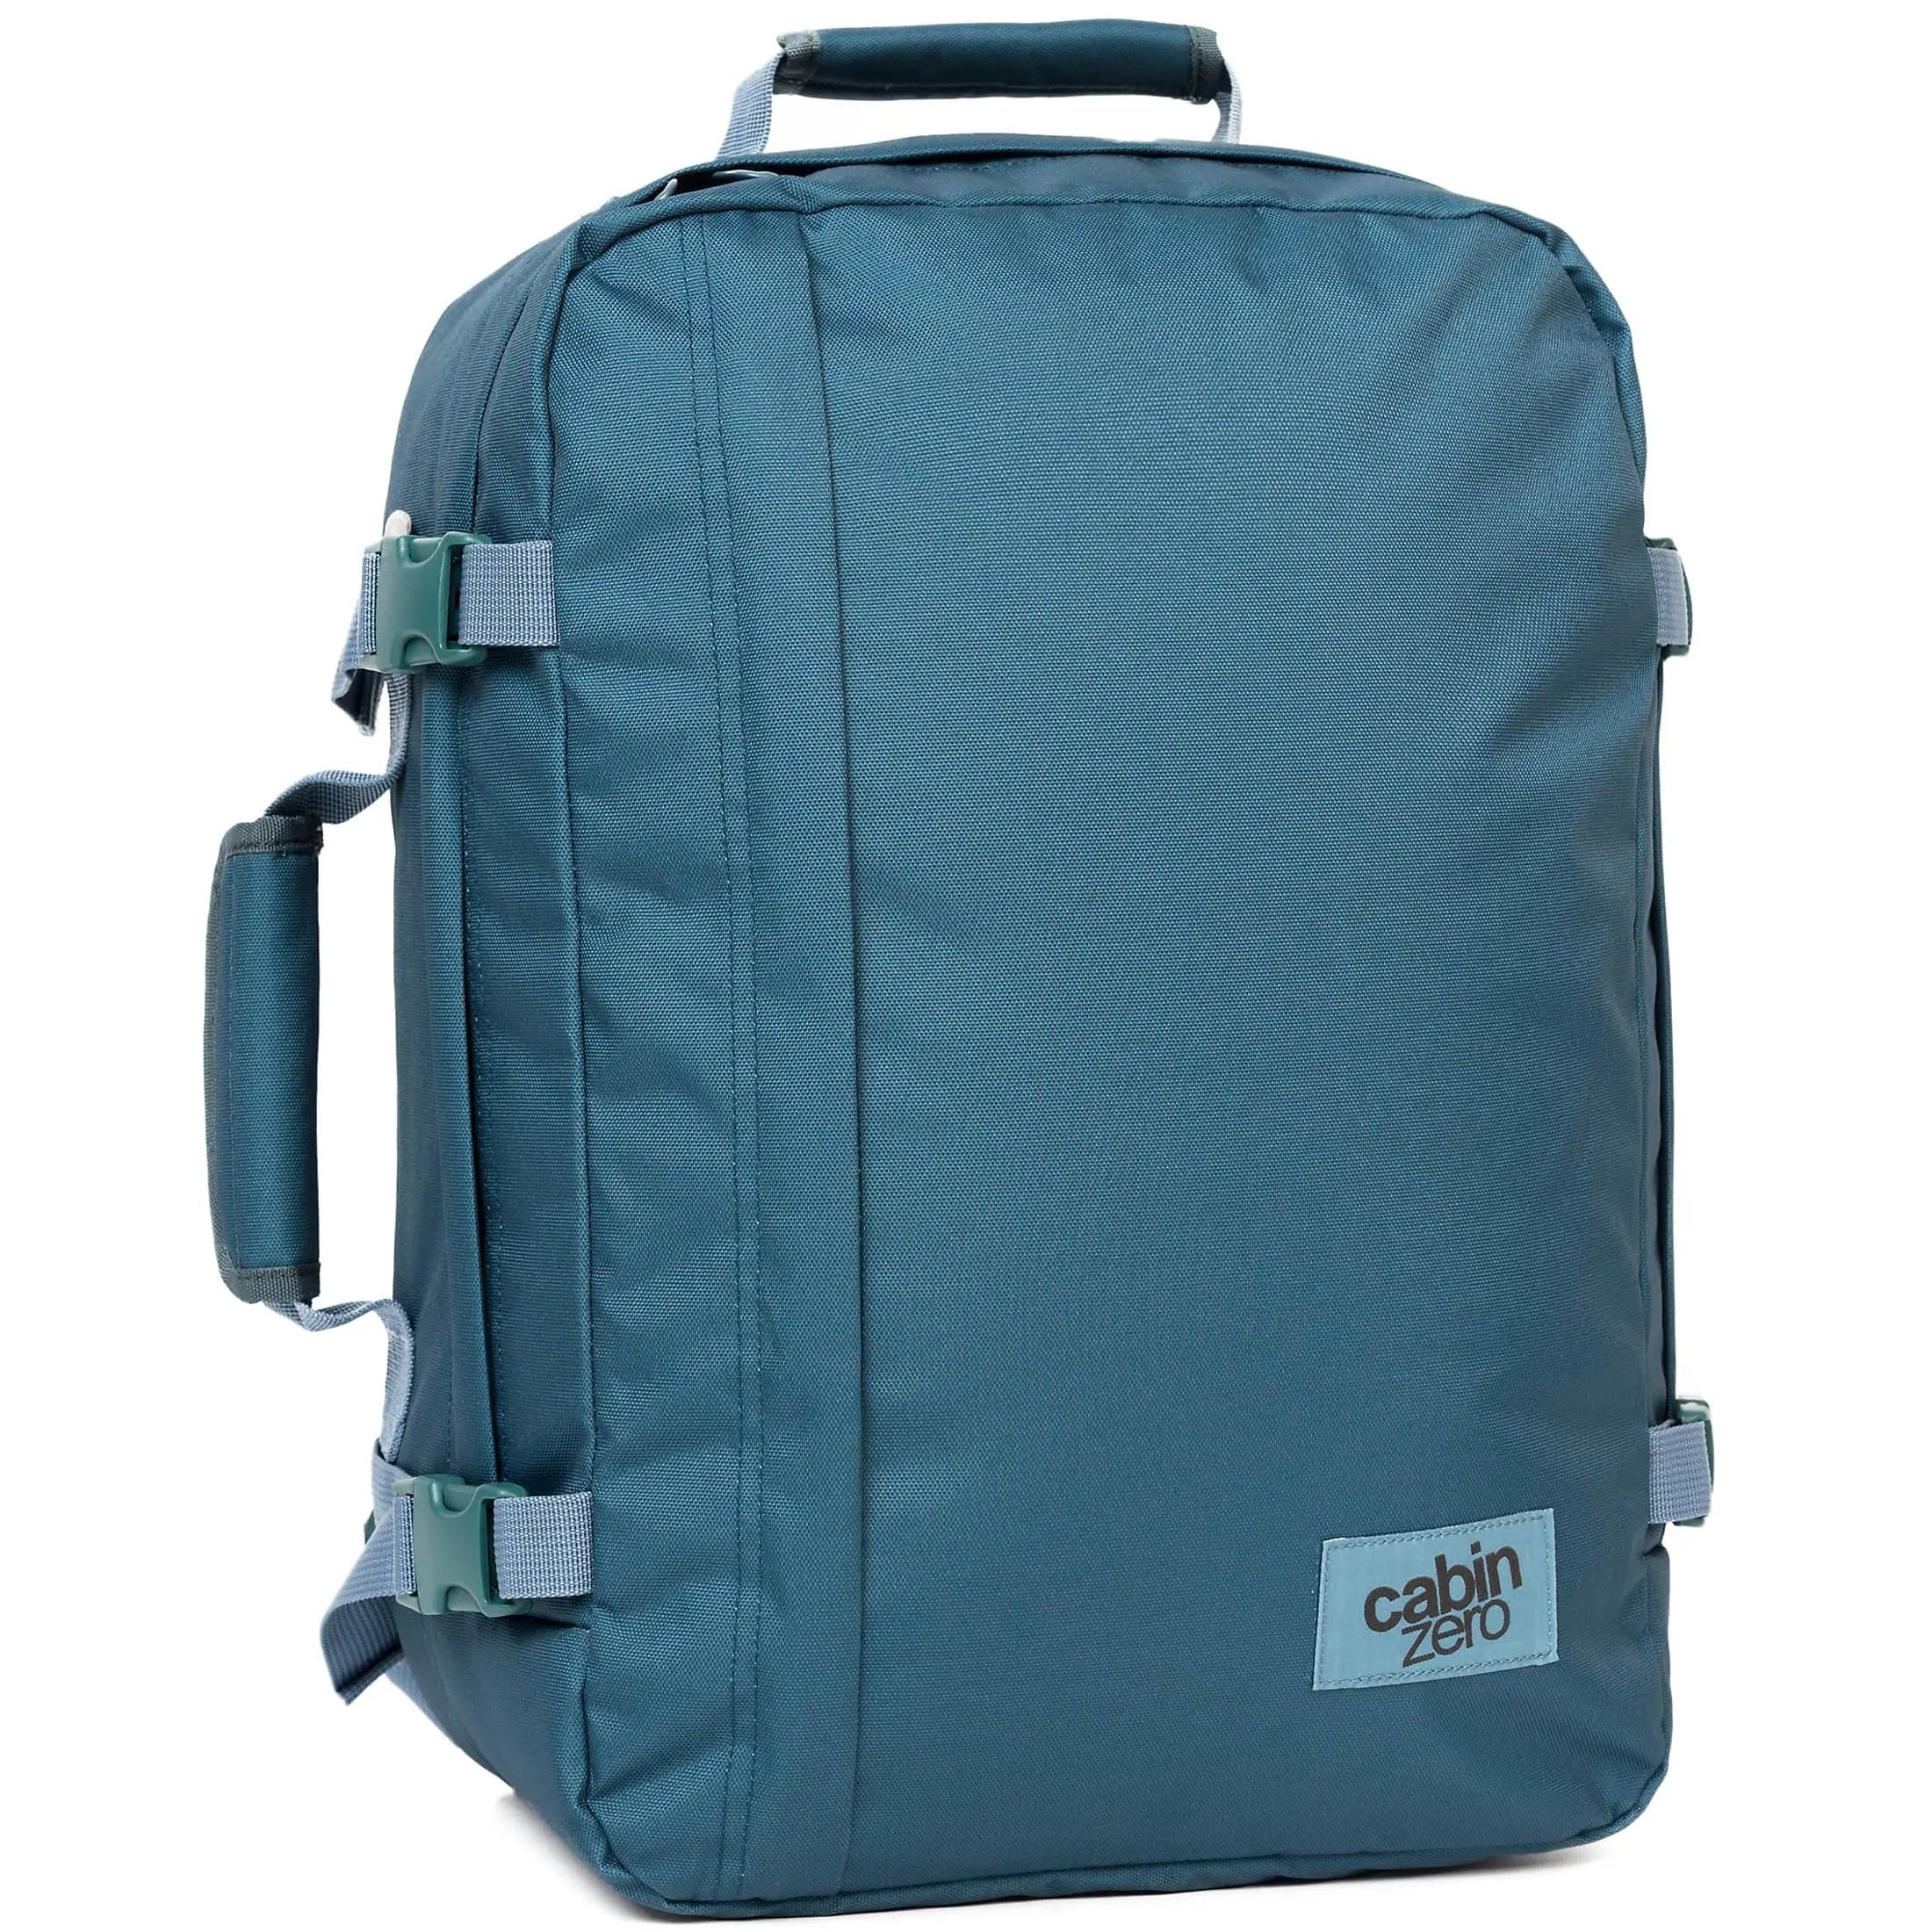 CabinZero Cabin Backpacks Sac à dos Classic 36L 45 cm - bleu aruba